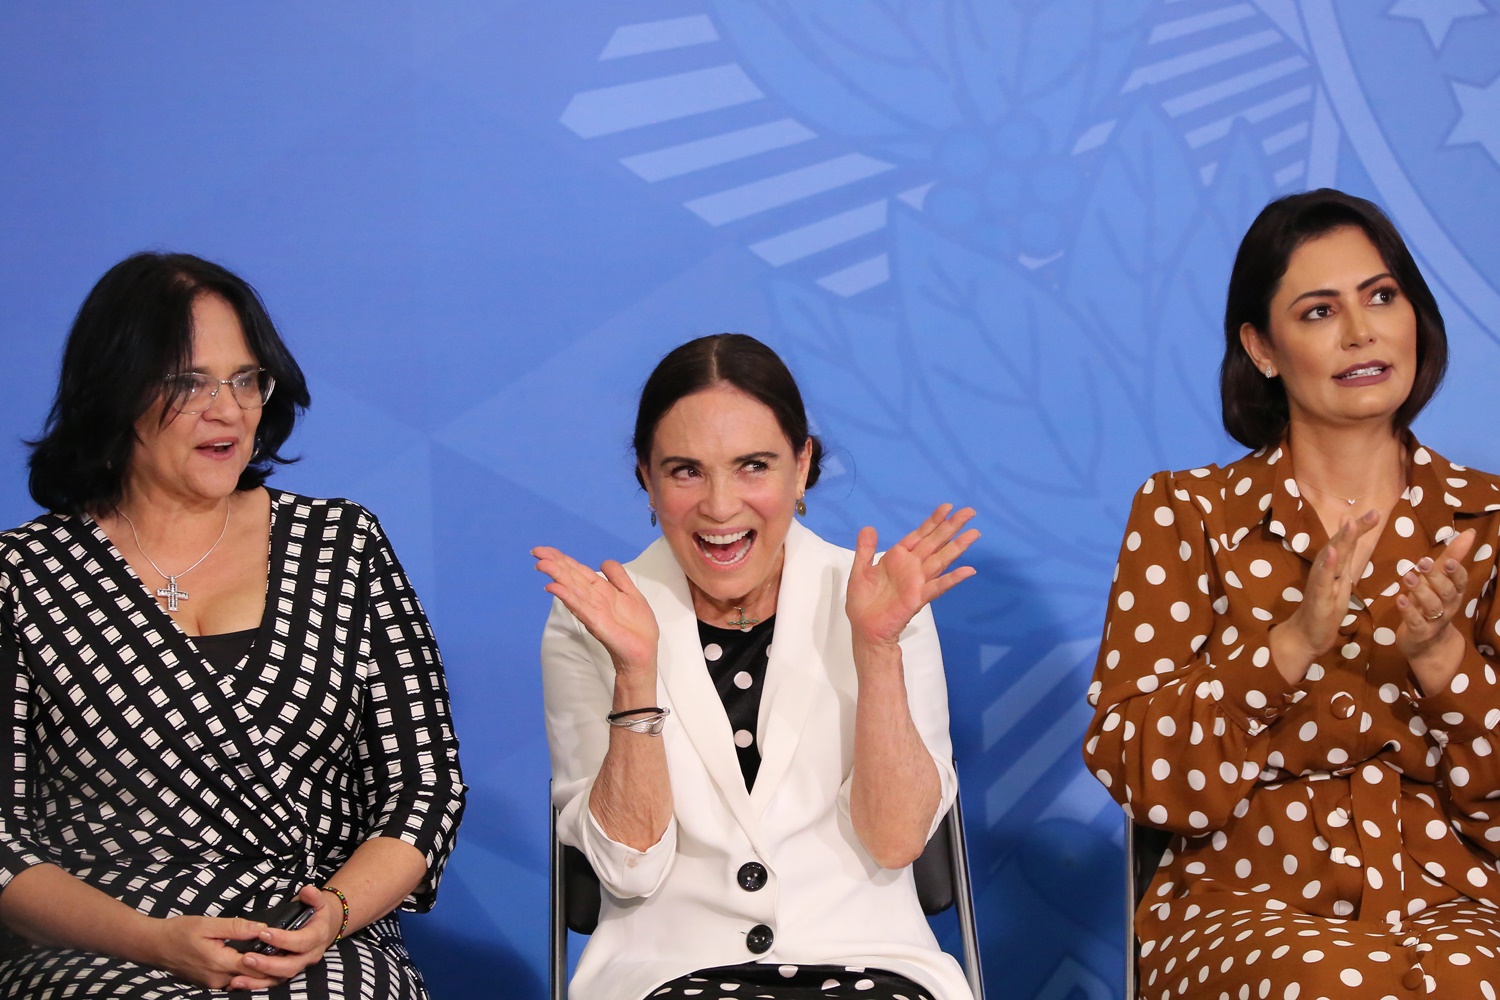 A atriz Regina Duarte, a Ministra Damares Alves, e a primeira dama Michelle Bolsonaro, durante posse da atriz como Secretária da Cultura em cerimônia no Palácio do Planalto em Brasília